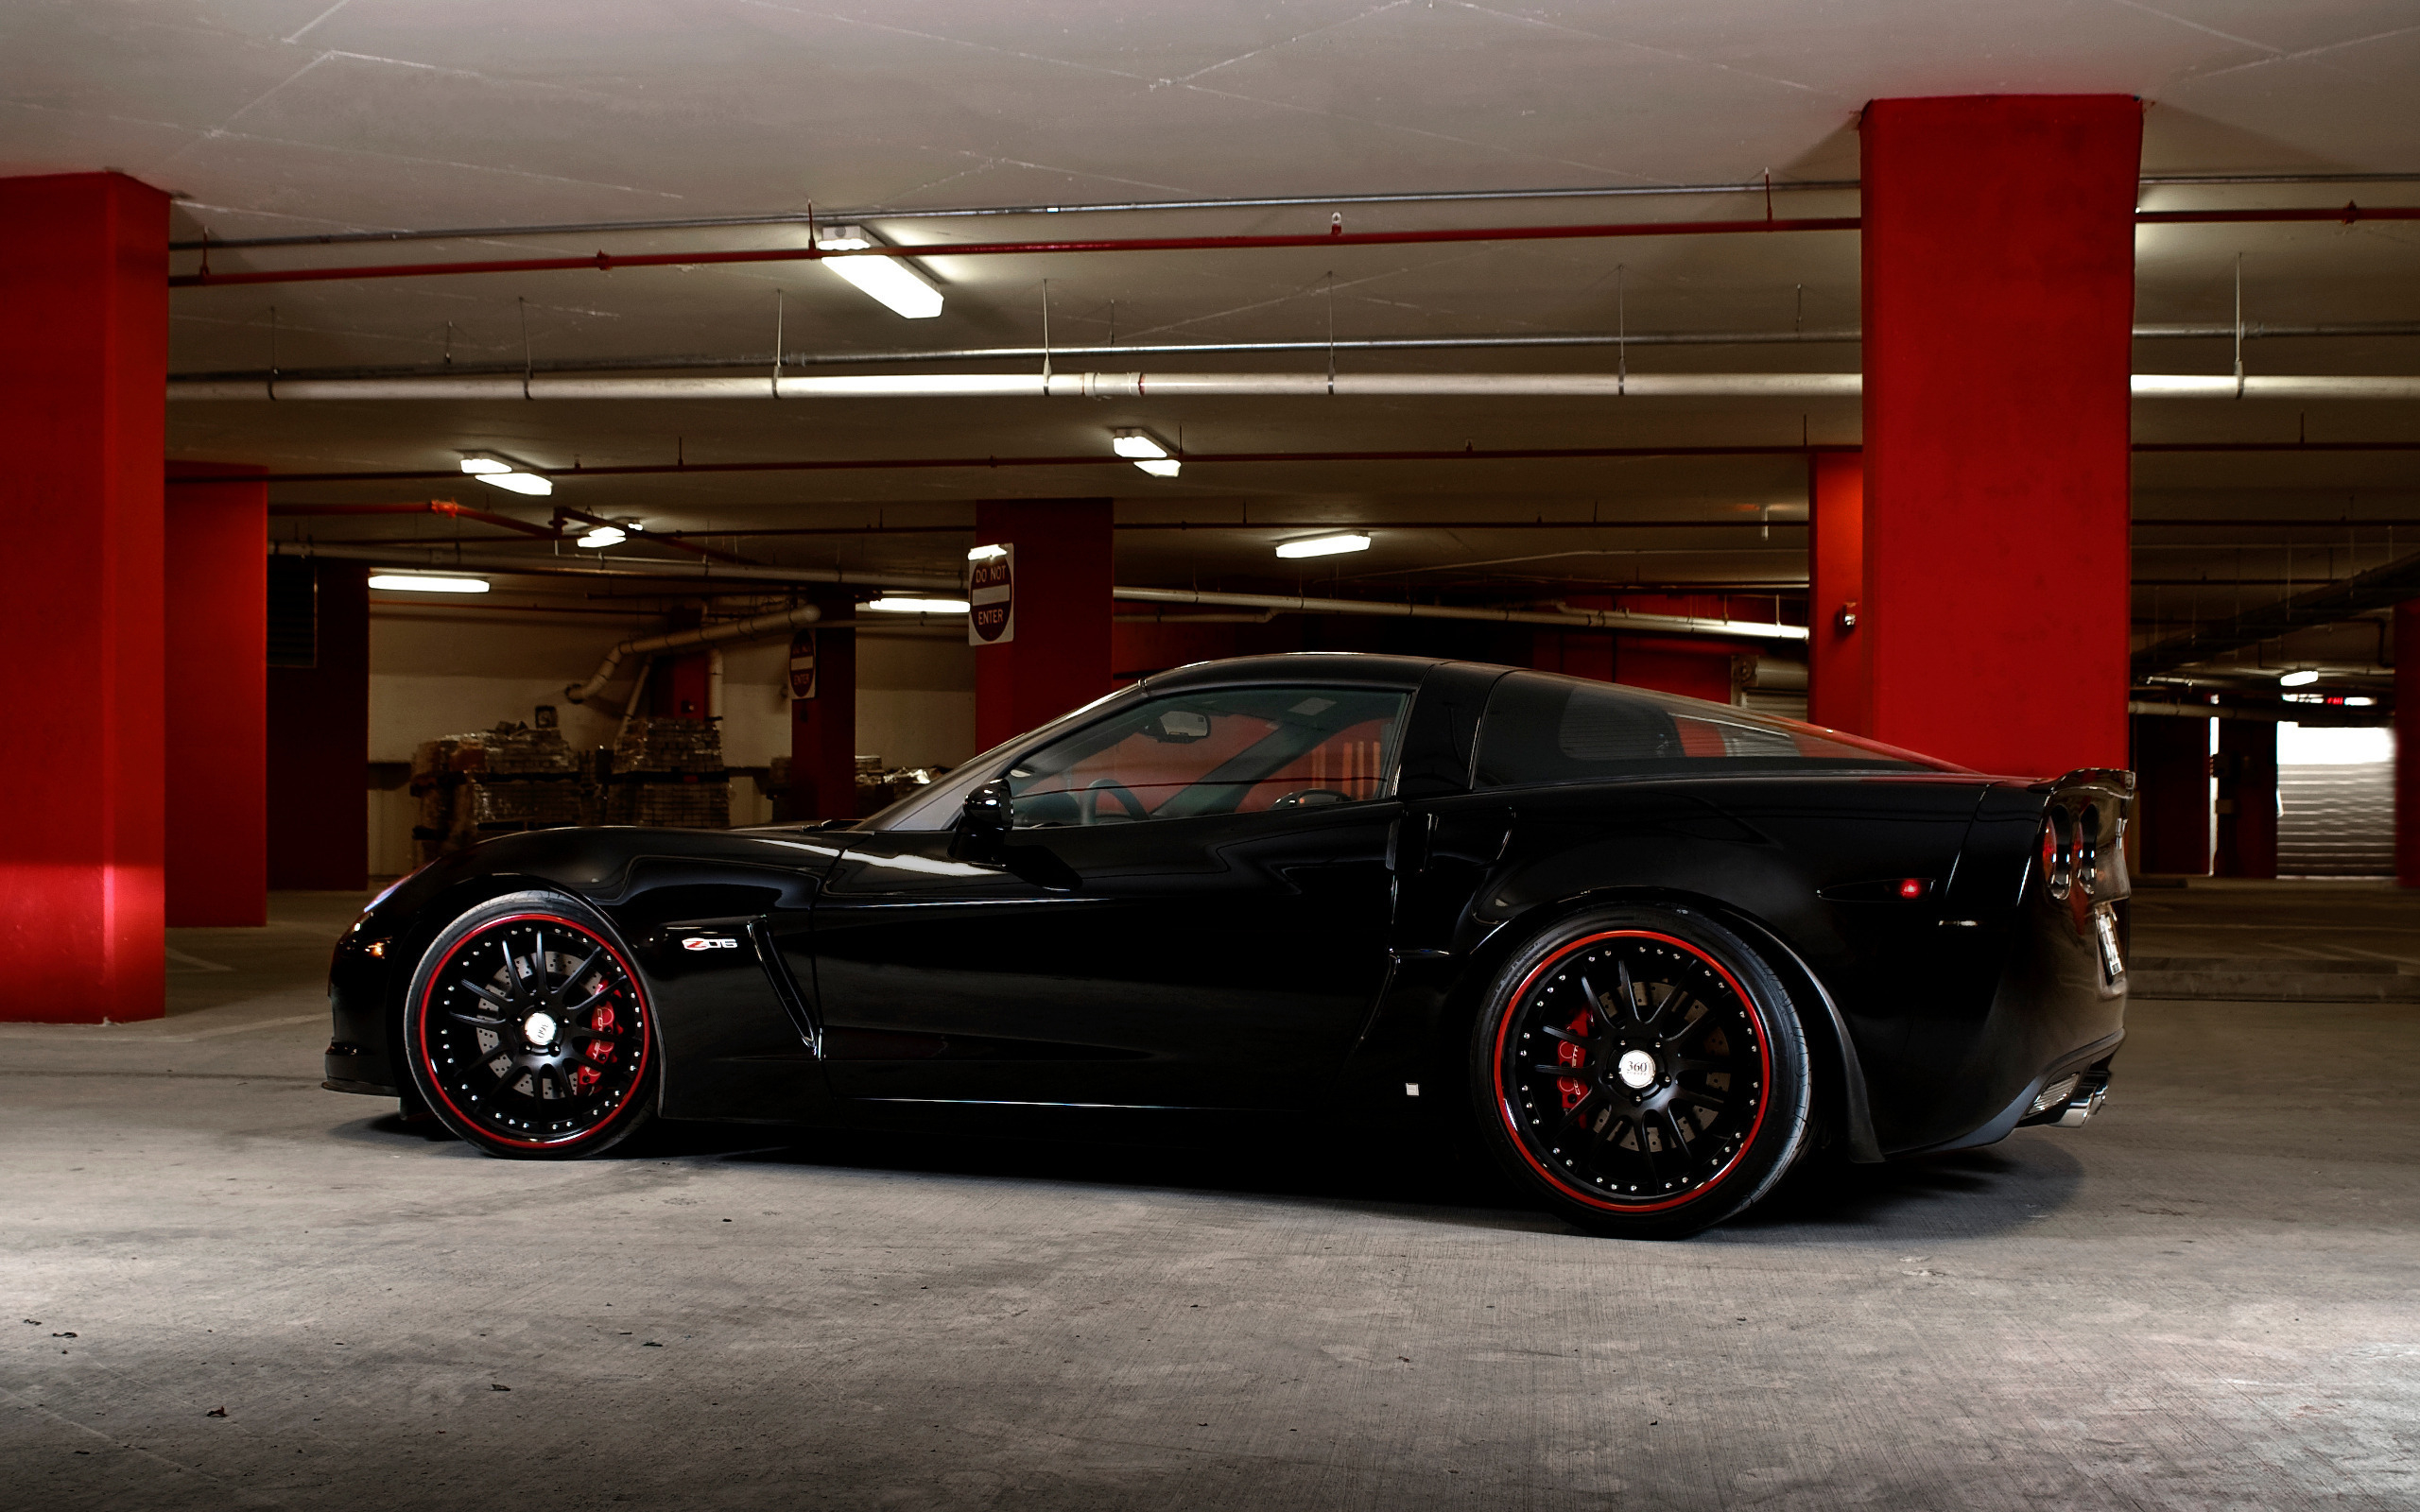 Chevrolet Corvette Z06 Black Wallpaper And Image